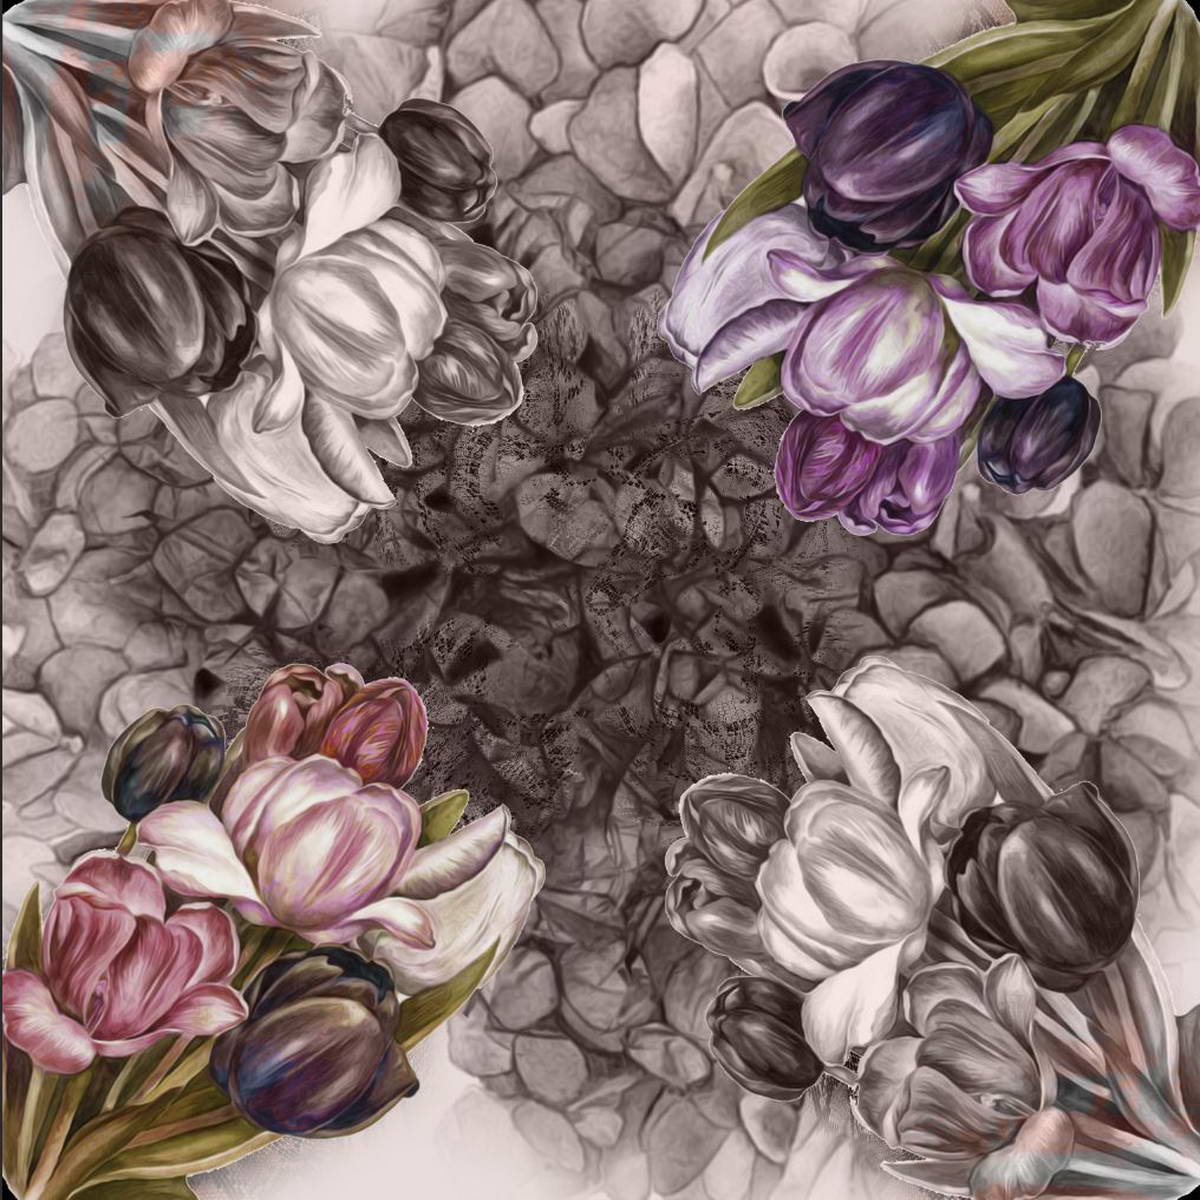 Платок Venera, цвет: серый, фиолетовый, оливковый. 3902627-12. Размер 90 см х 90 см